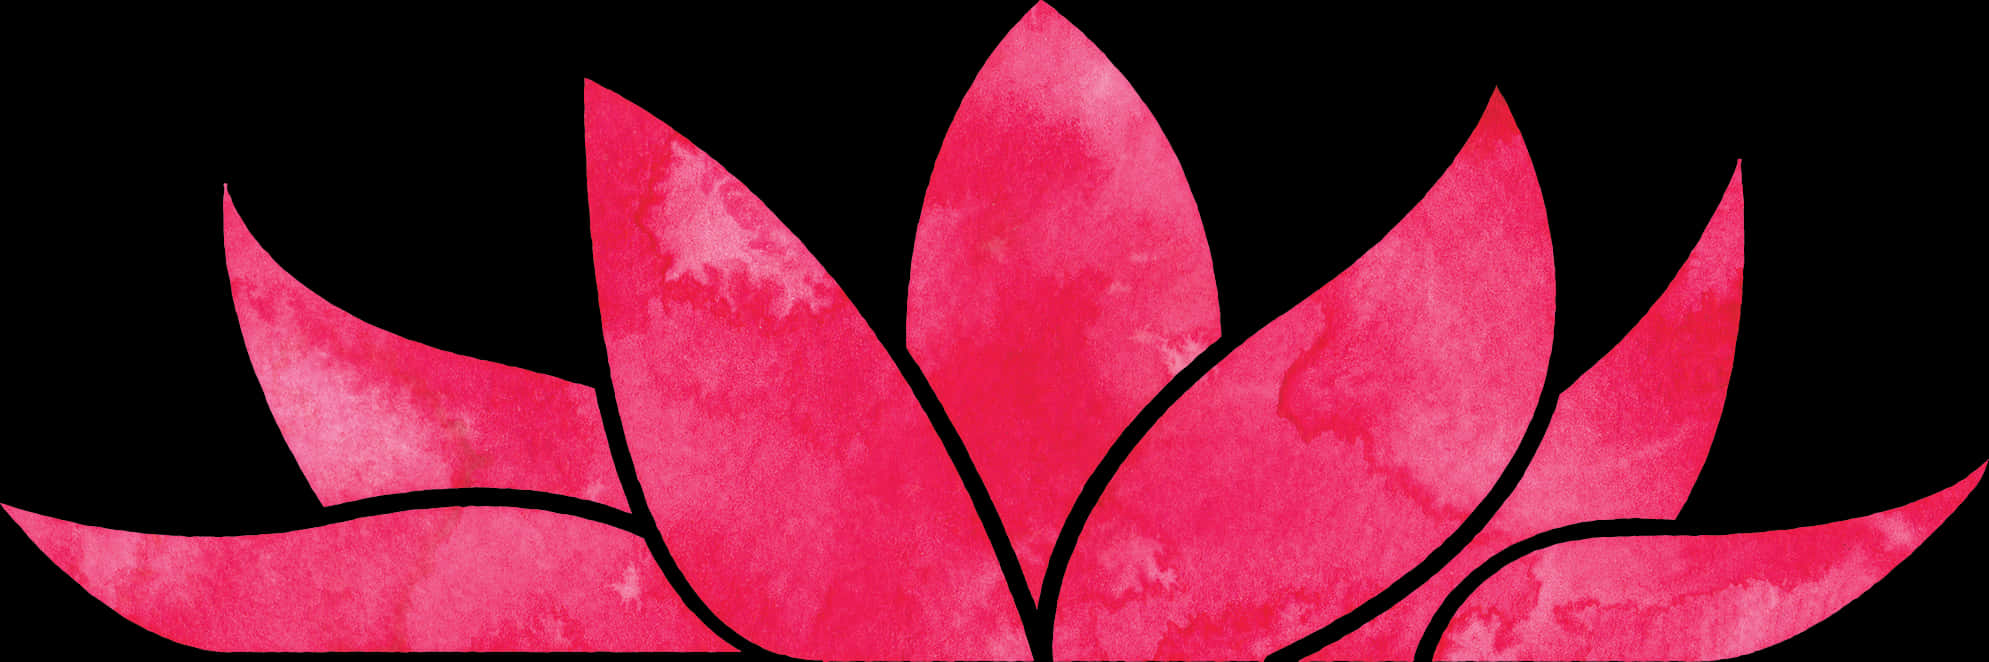 Pink Lotus Illustration PNG image